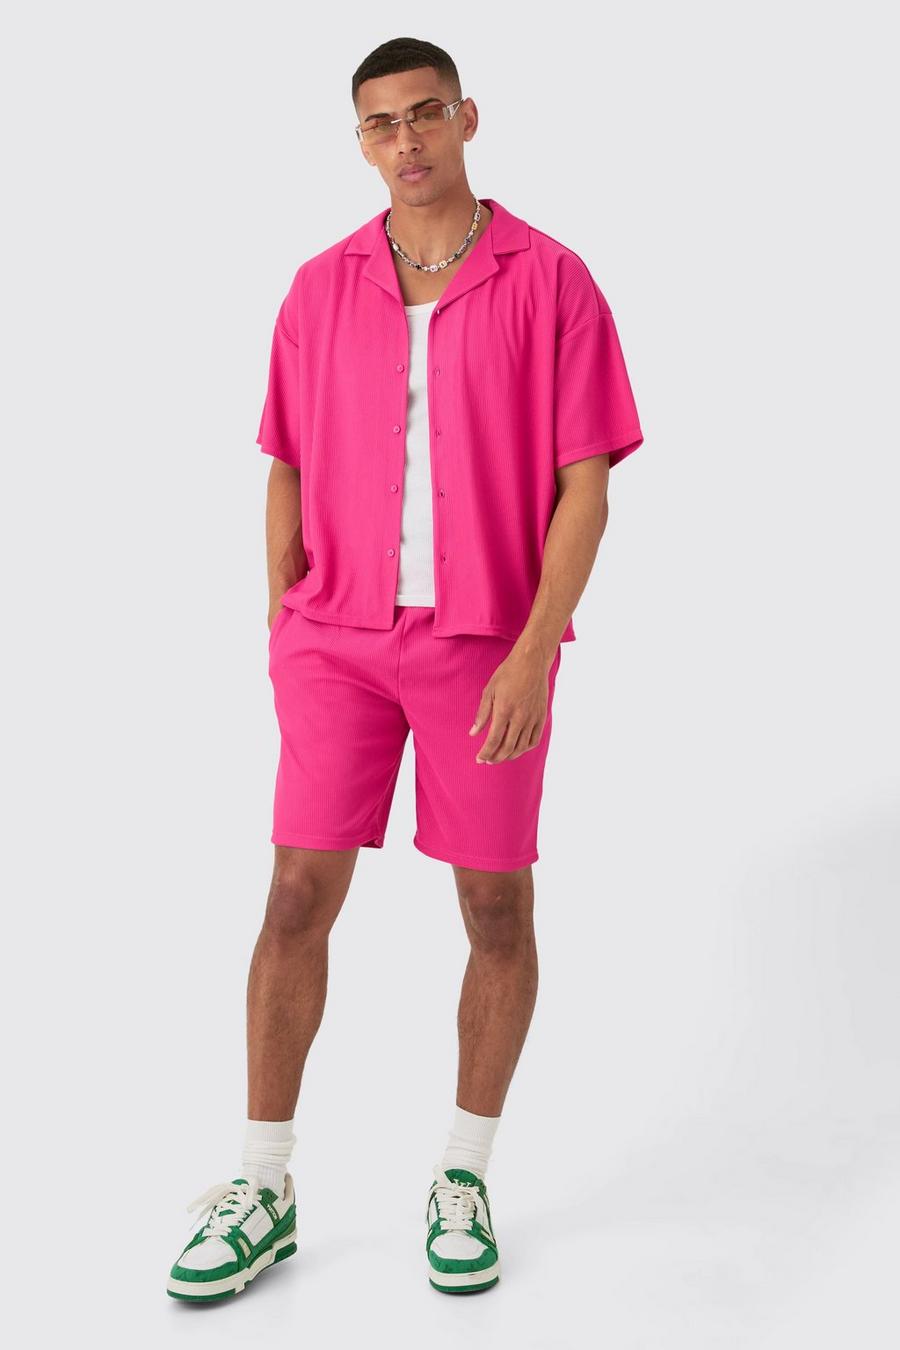 Kurzärmliges kastiges geripptes Hemd & Shorts, Hot pink image number 1